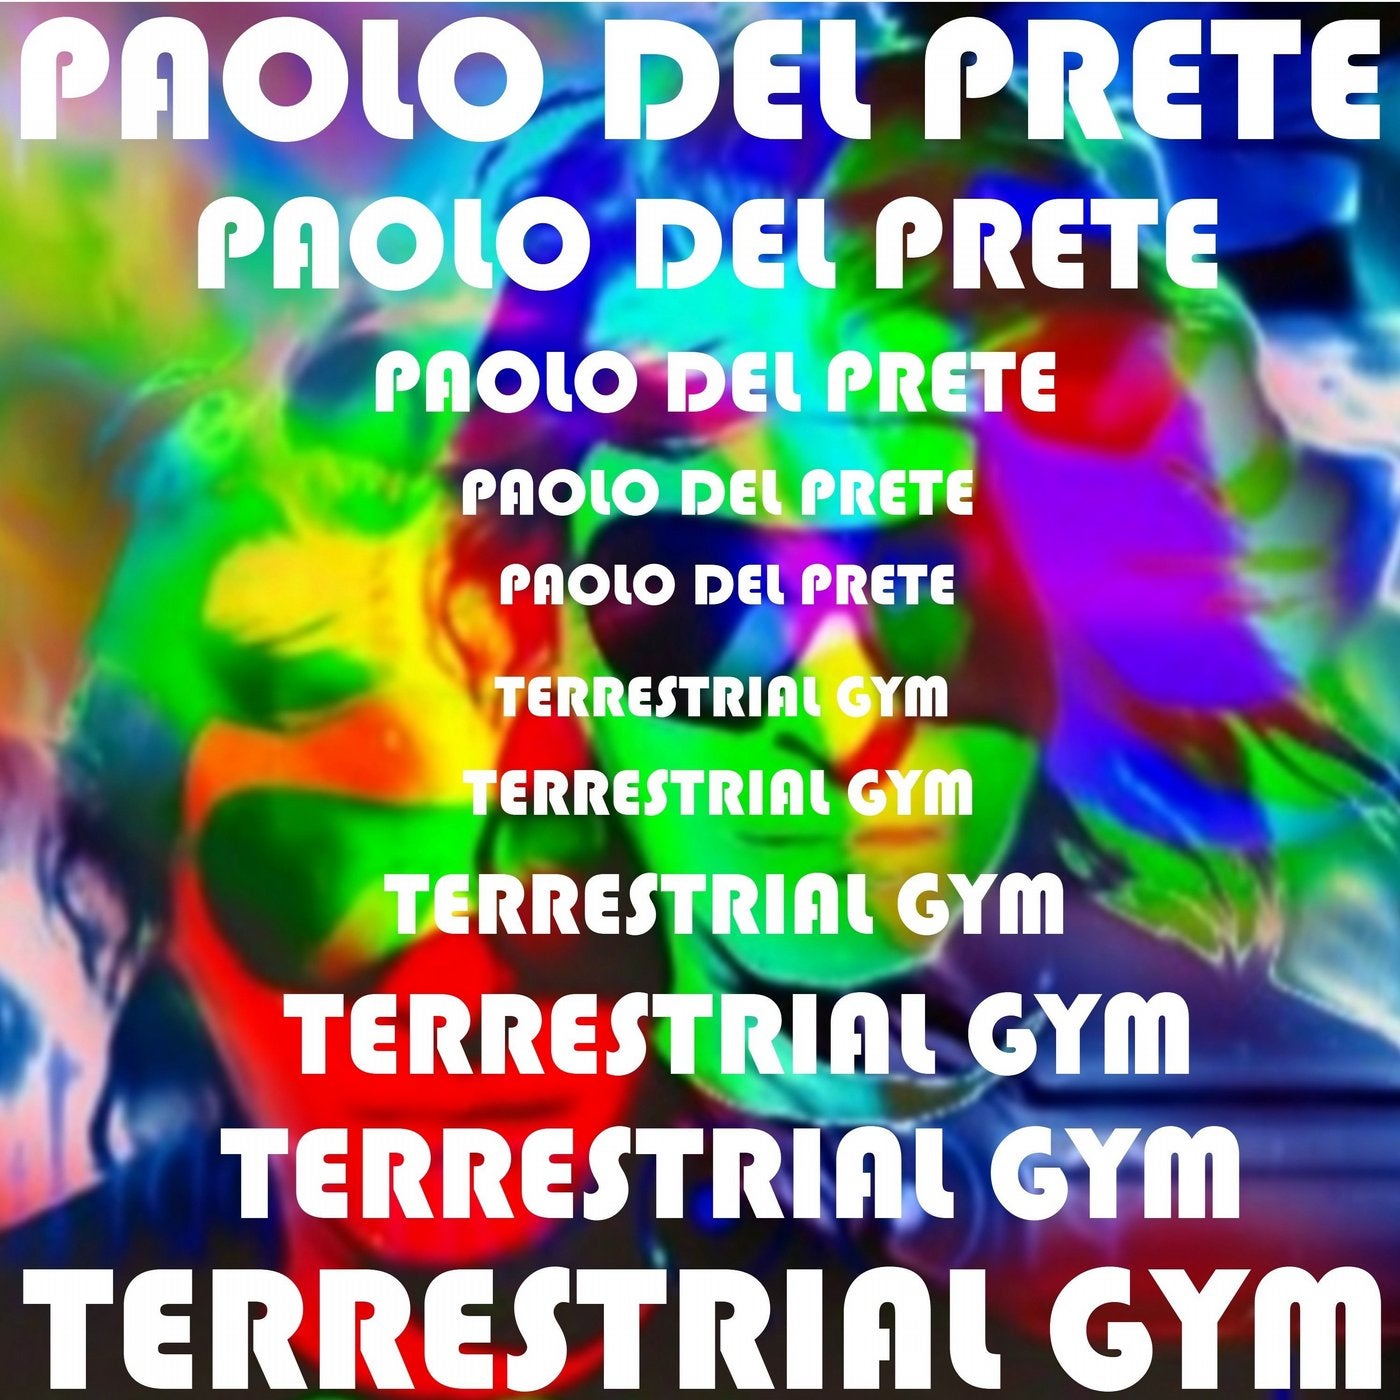 Terrestrial Gym